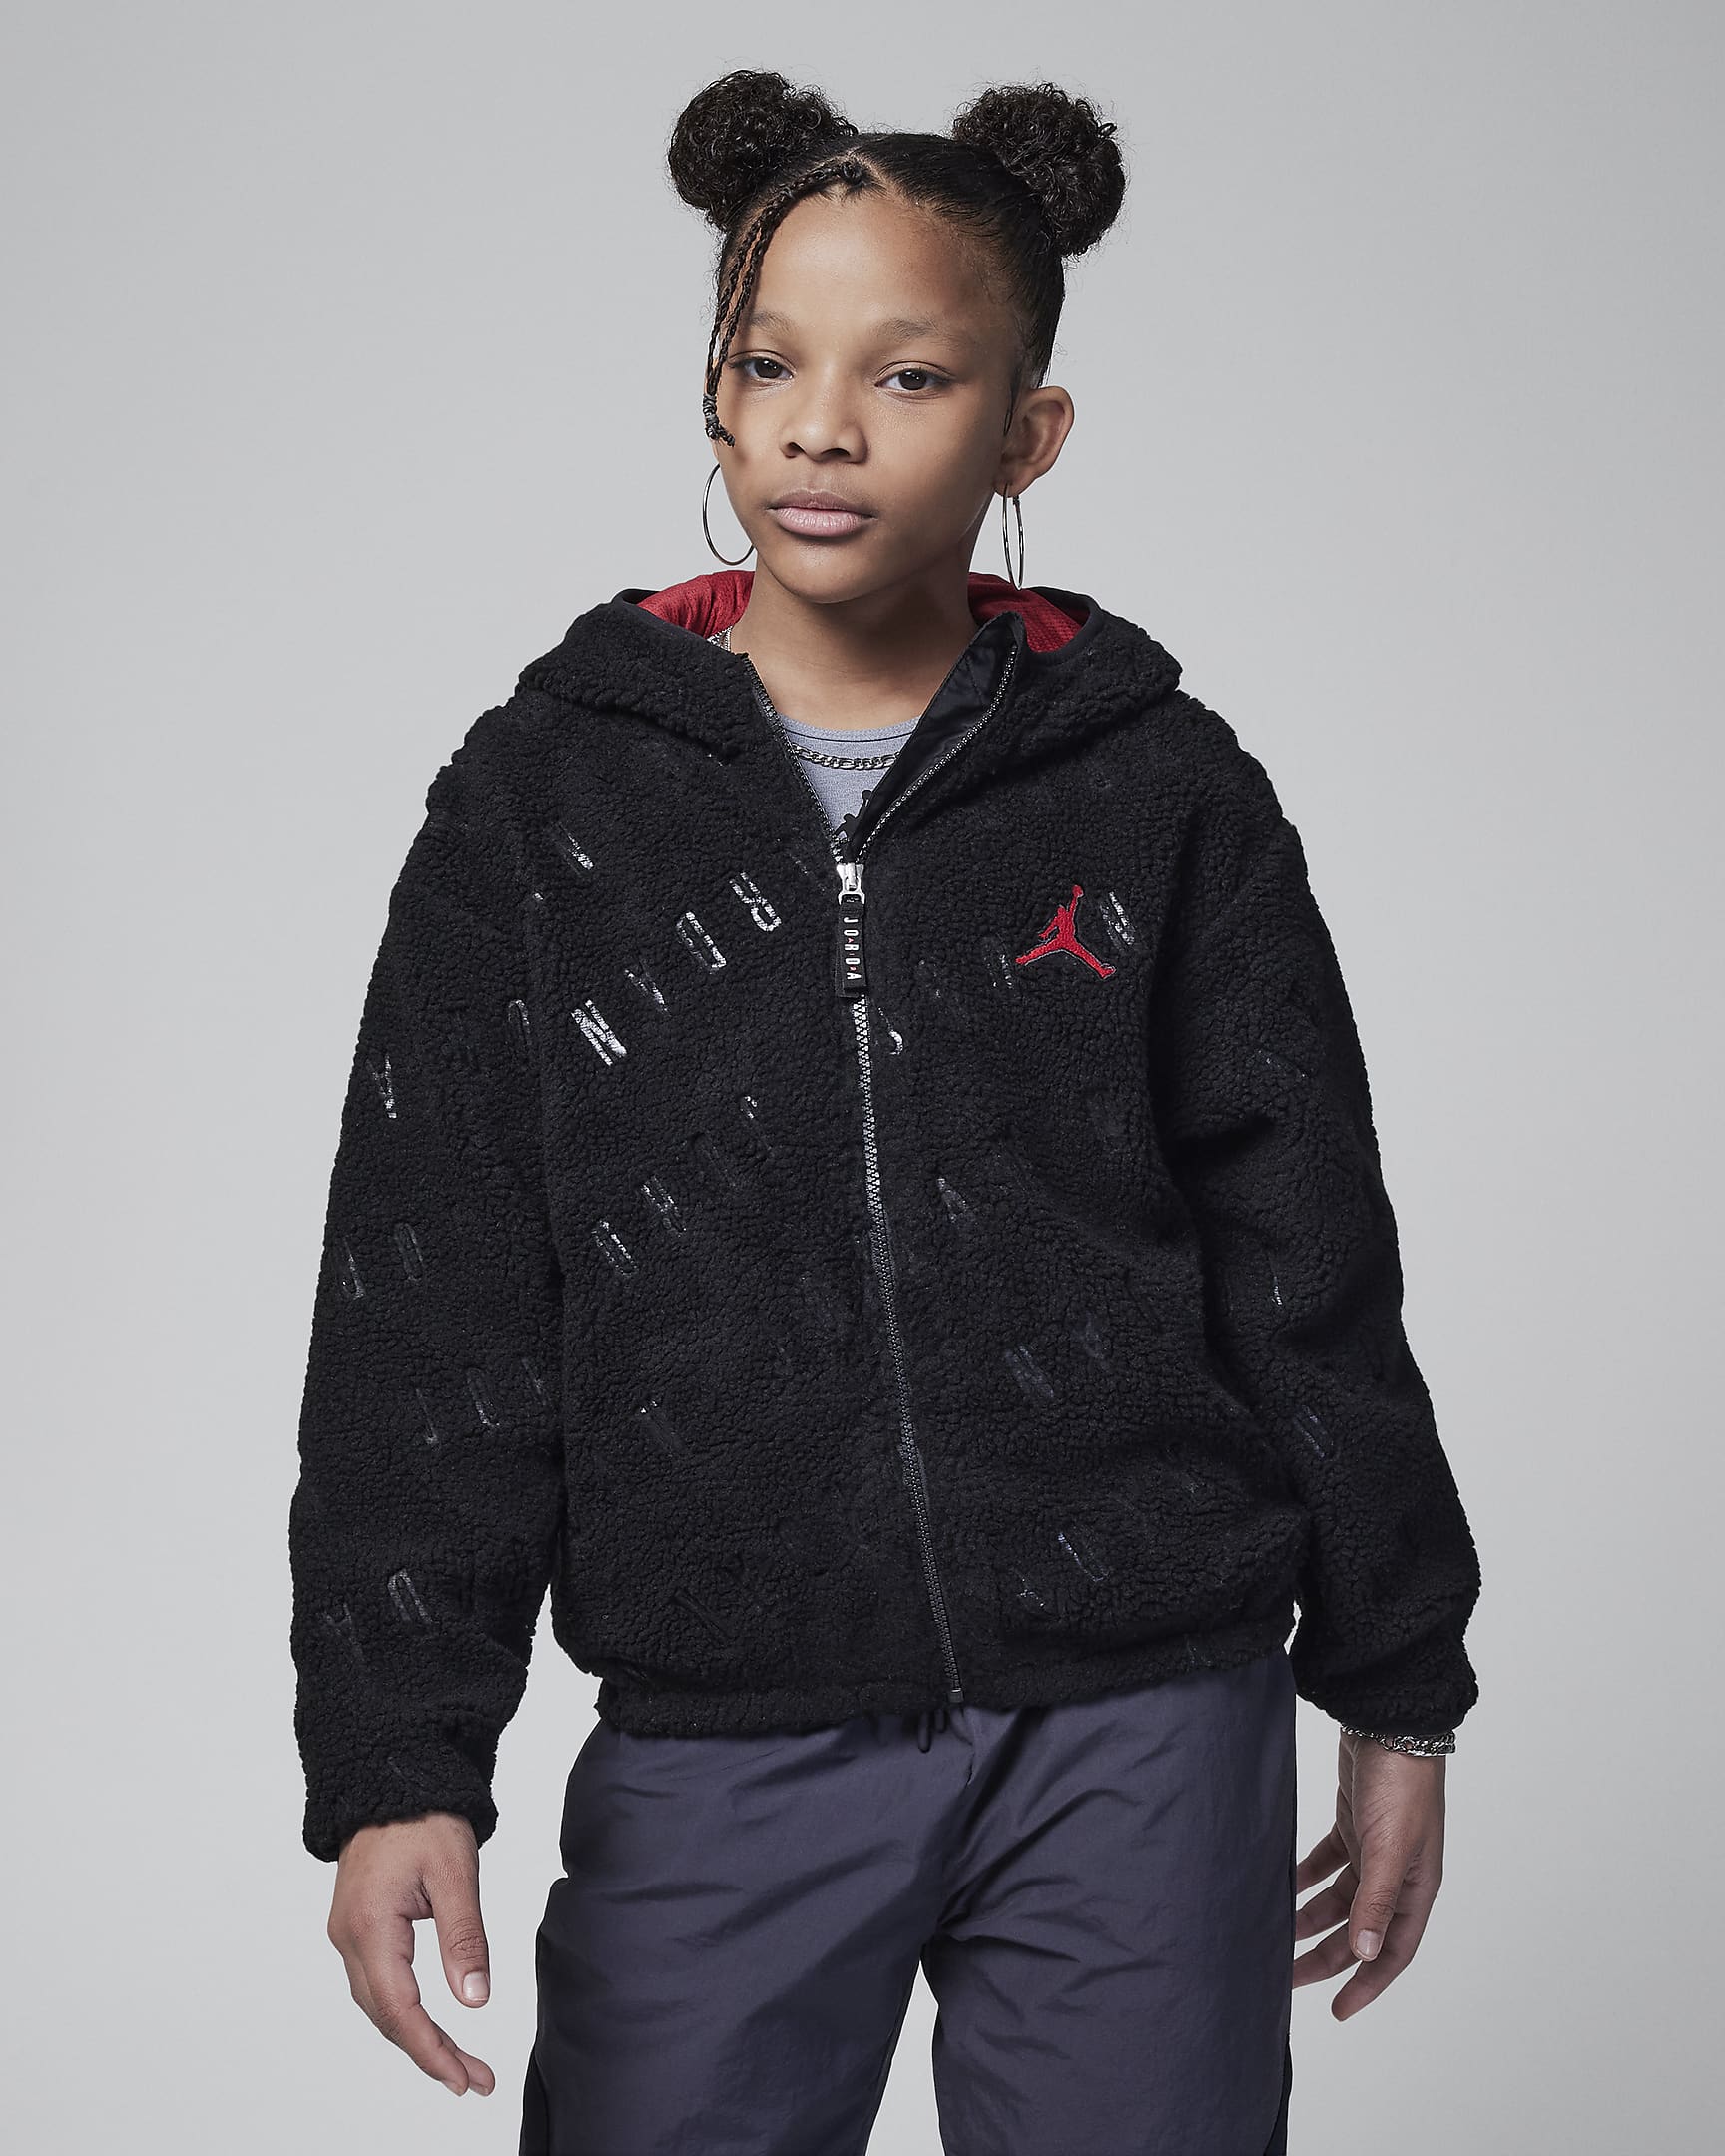 Jordan Jacquard Sherpa Jacket Older Kids' Jacket. Nike UK